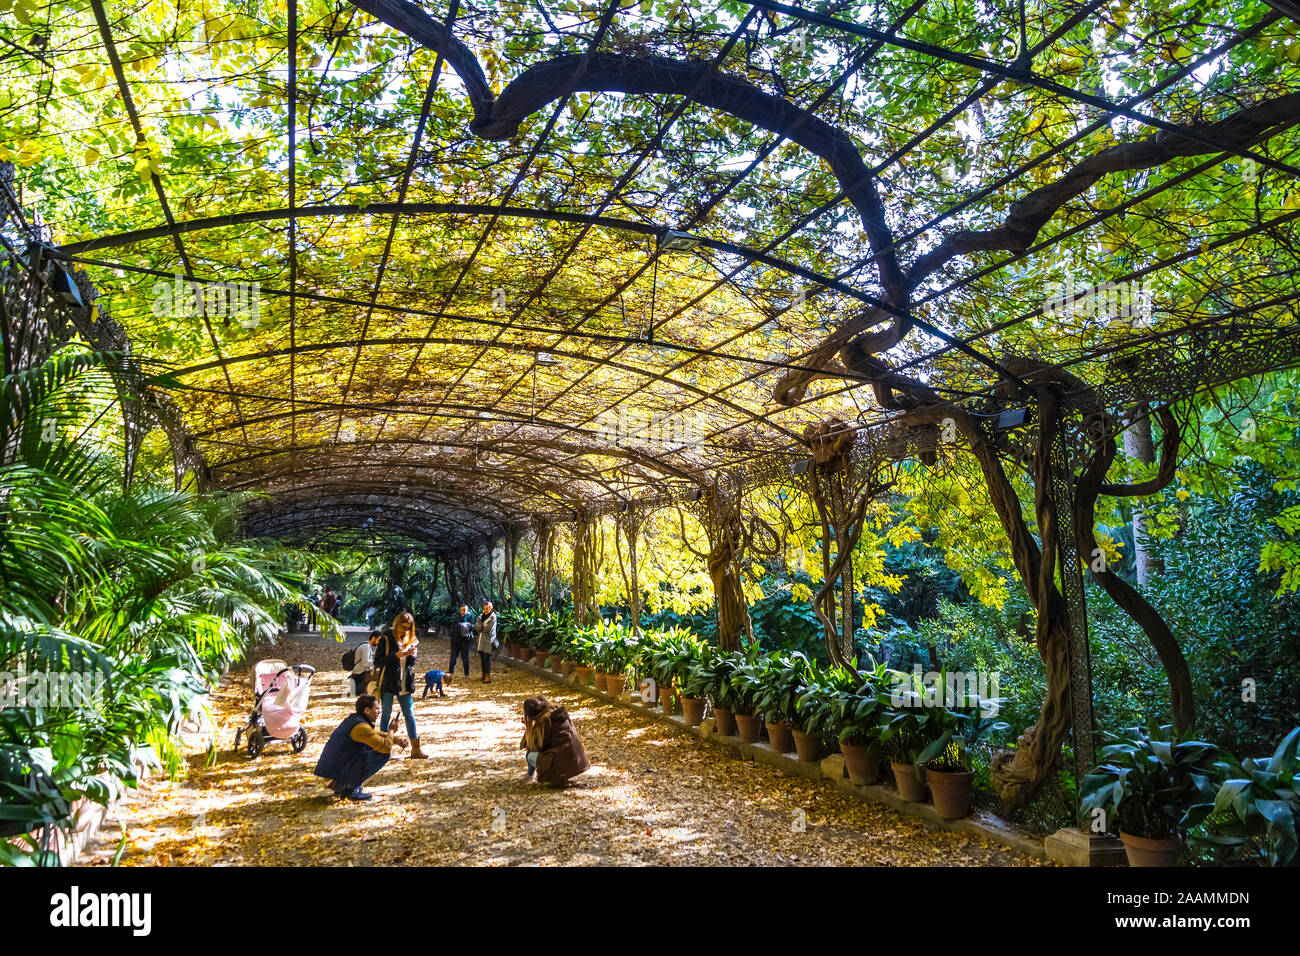 Malaga, Spanien - 10. Dezember 2017: Botanischer Garten (Jardin Botanico La Concepcion) in Malaga. Einer der wenigen Gärten mit subtropischen Klima Pflanzen Stockfoto